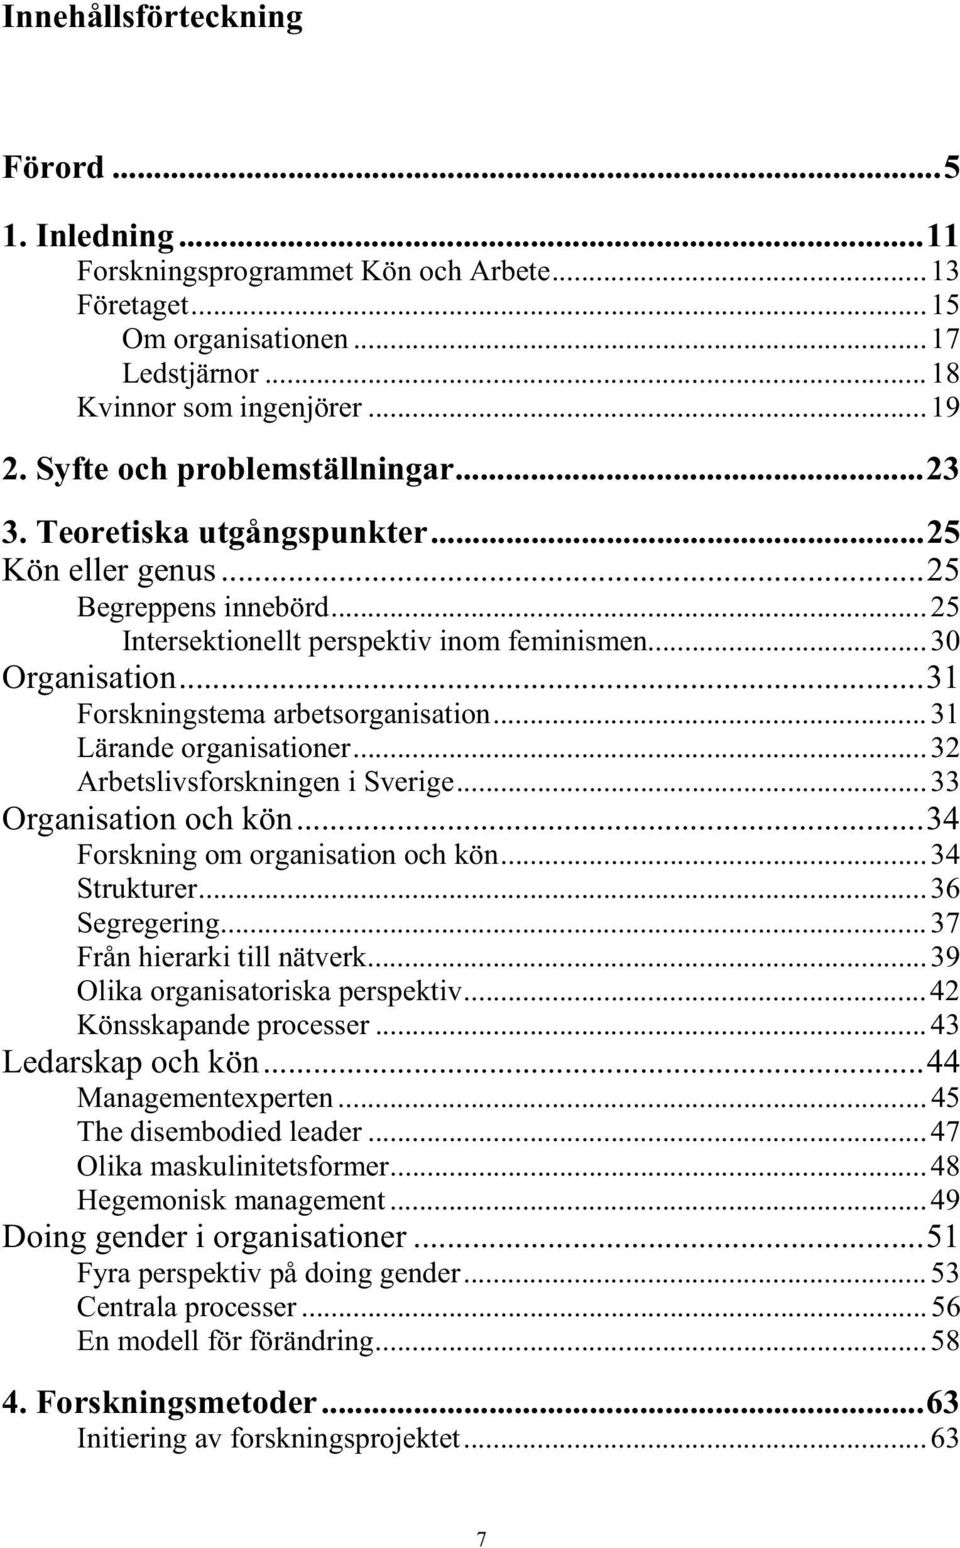 ..31 Forskningstema arbetsorganisation...31 Lärande organisationer...32 Arbetslivsforskningen i Sverige...33 Organisation och kön...34 Forskning om organisation och kön...34 Strukturer...36 Segregering.